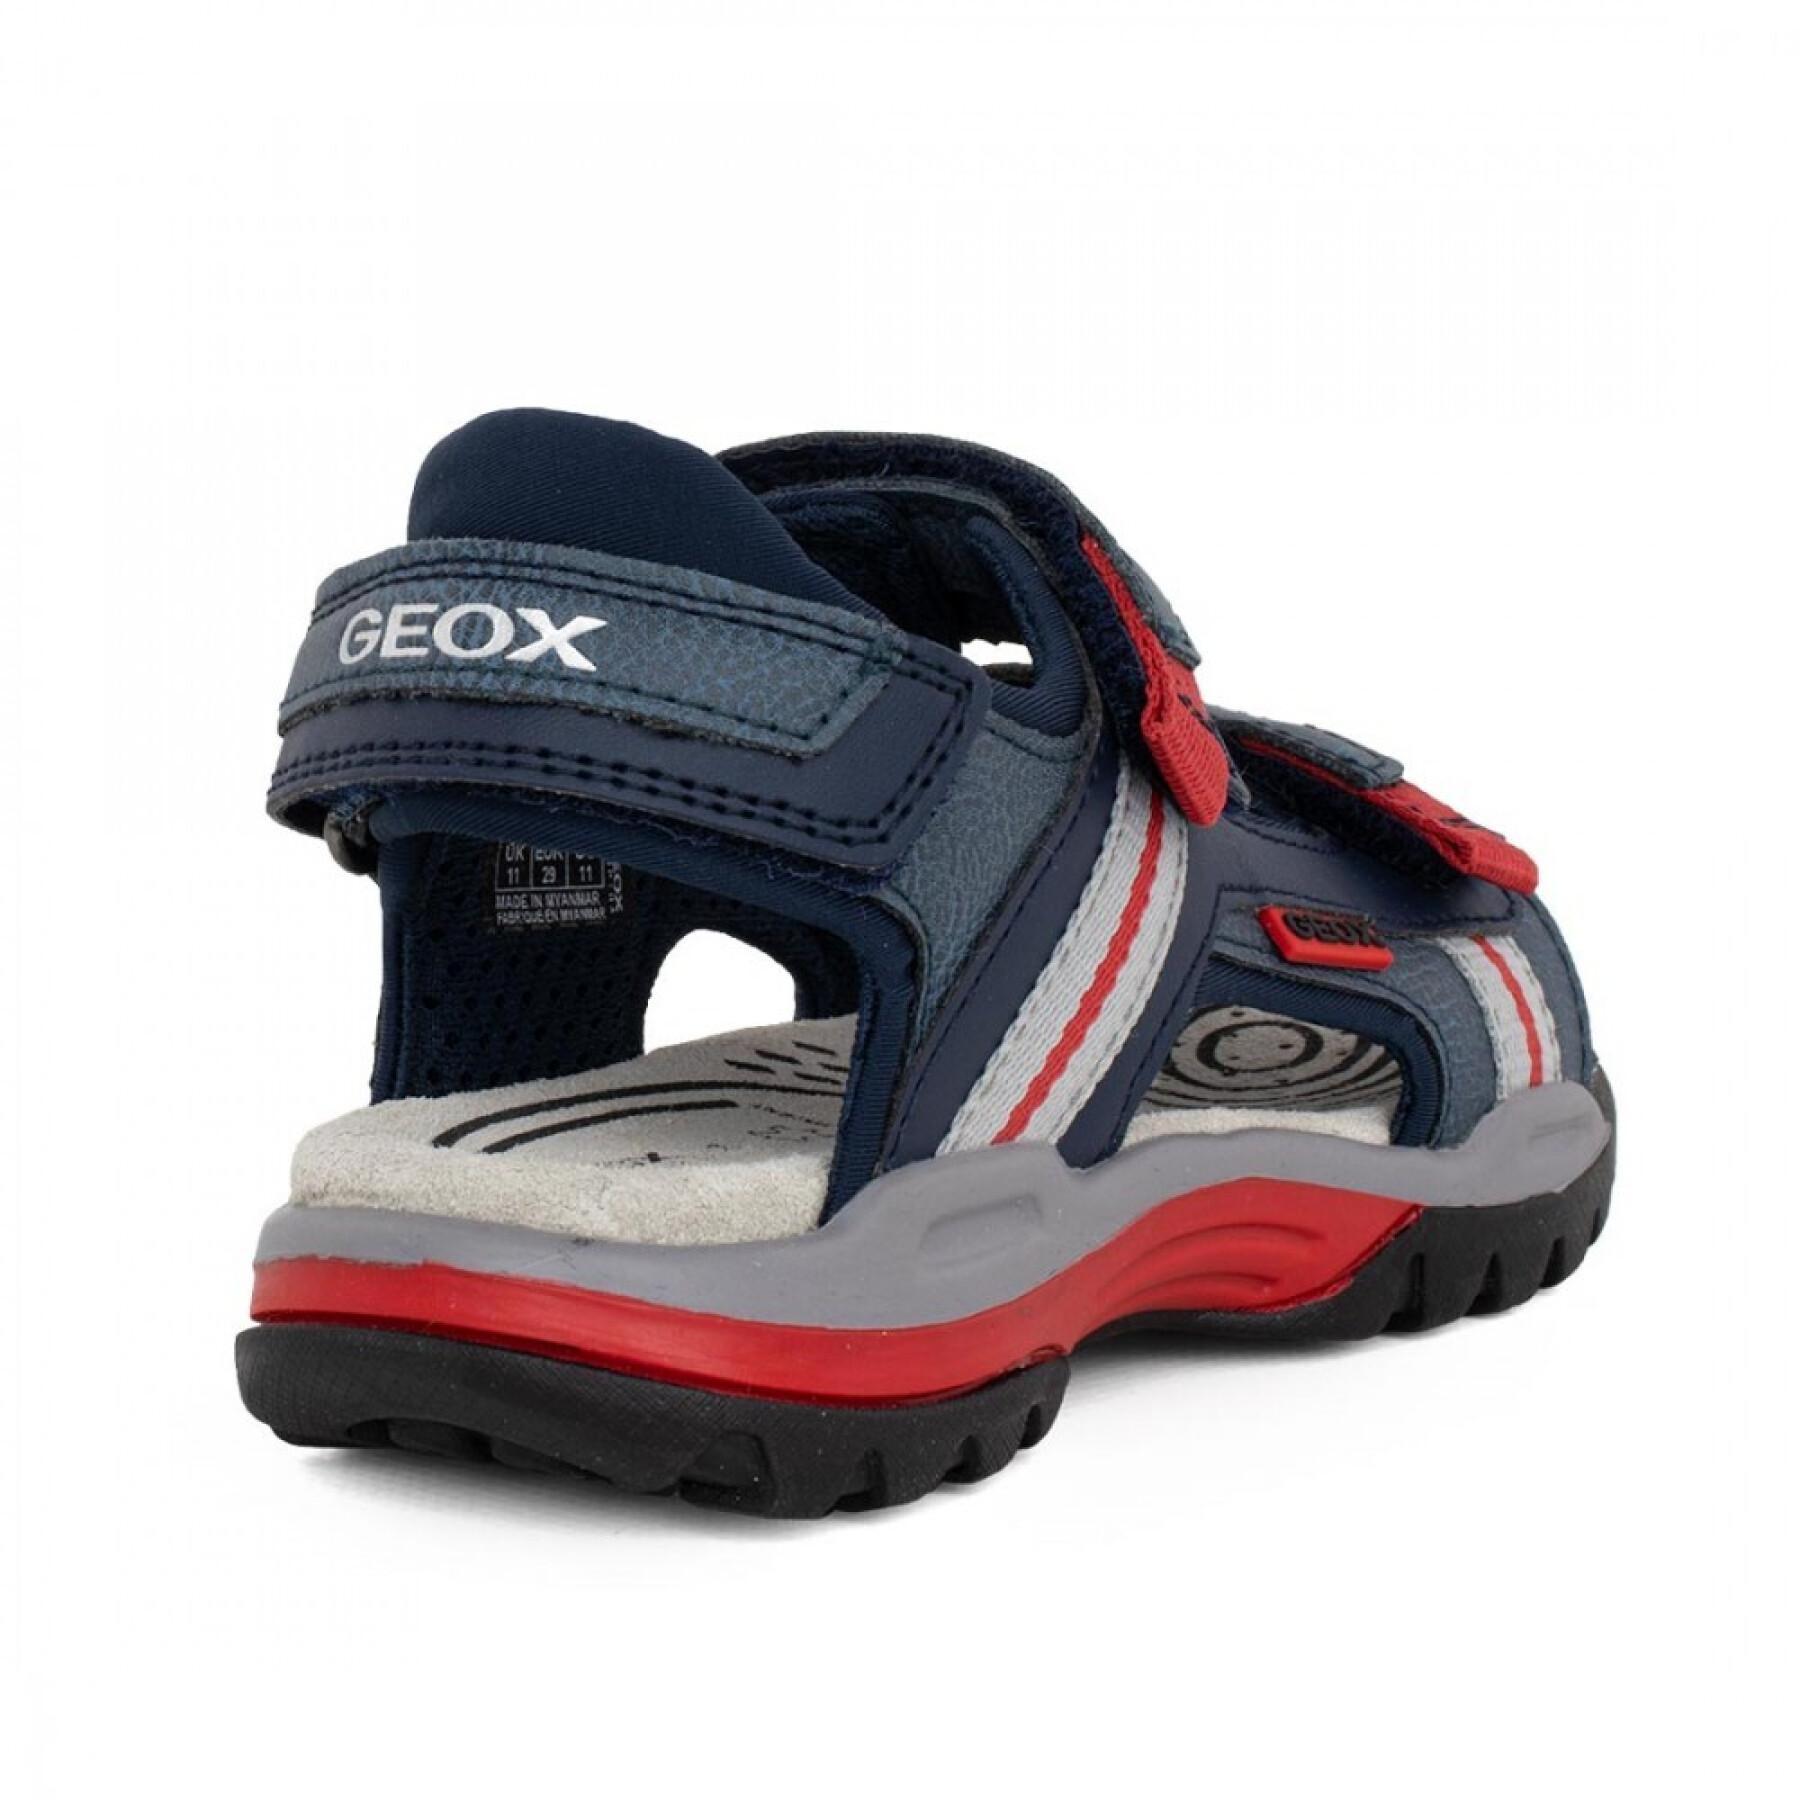 Sandalias para niños Geox Borealis